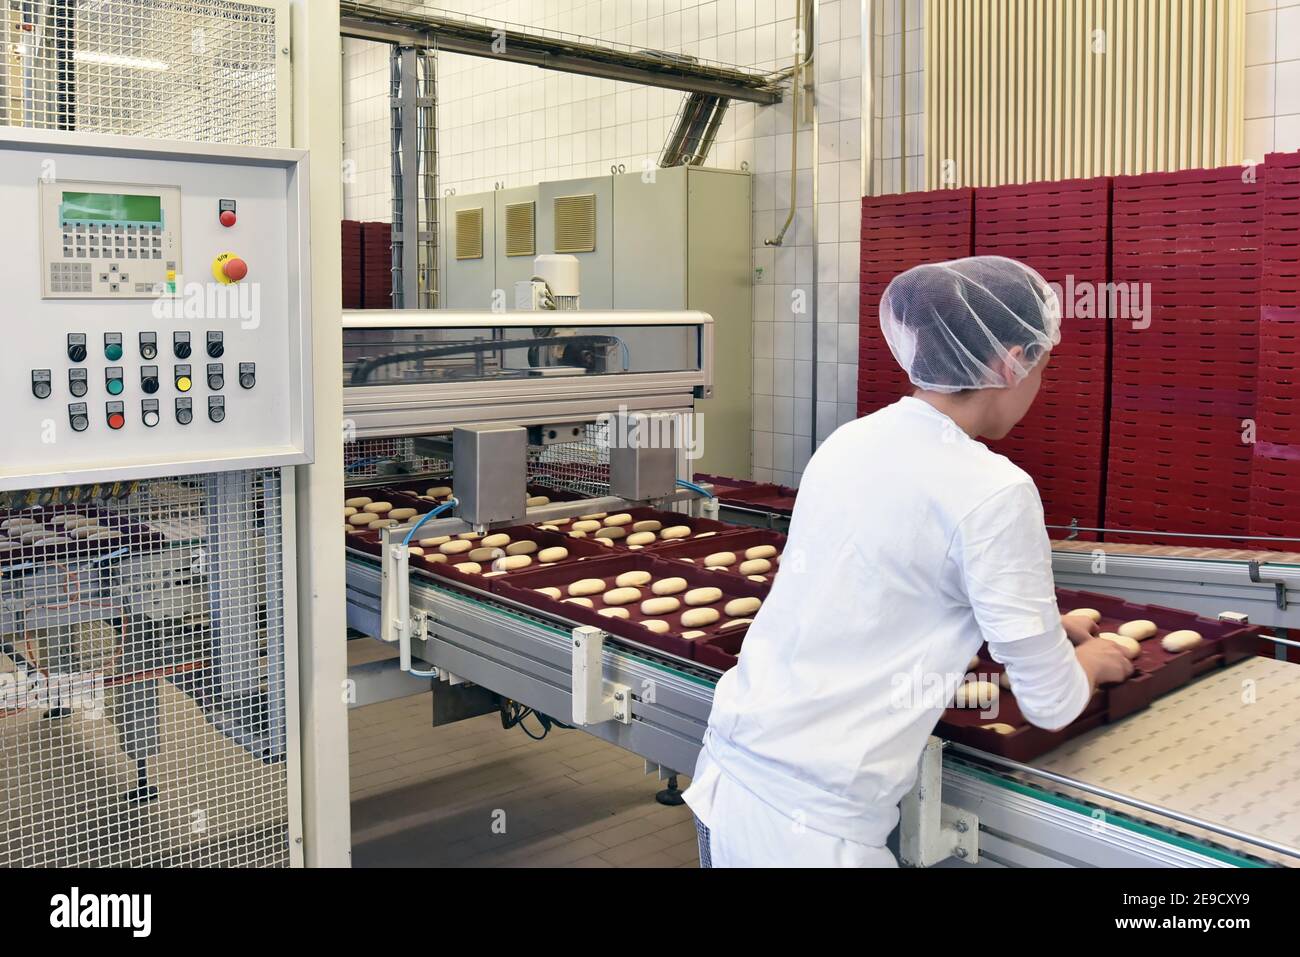 Frau, die in einer großen Bäckerei arbeitet - industrielle Produktion von Backwaren auf einer Montagelinie Stockfoto